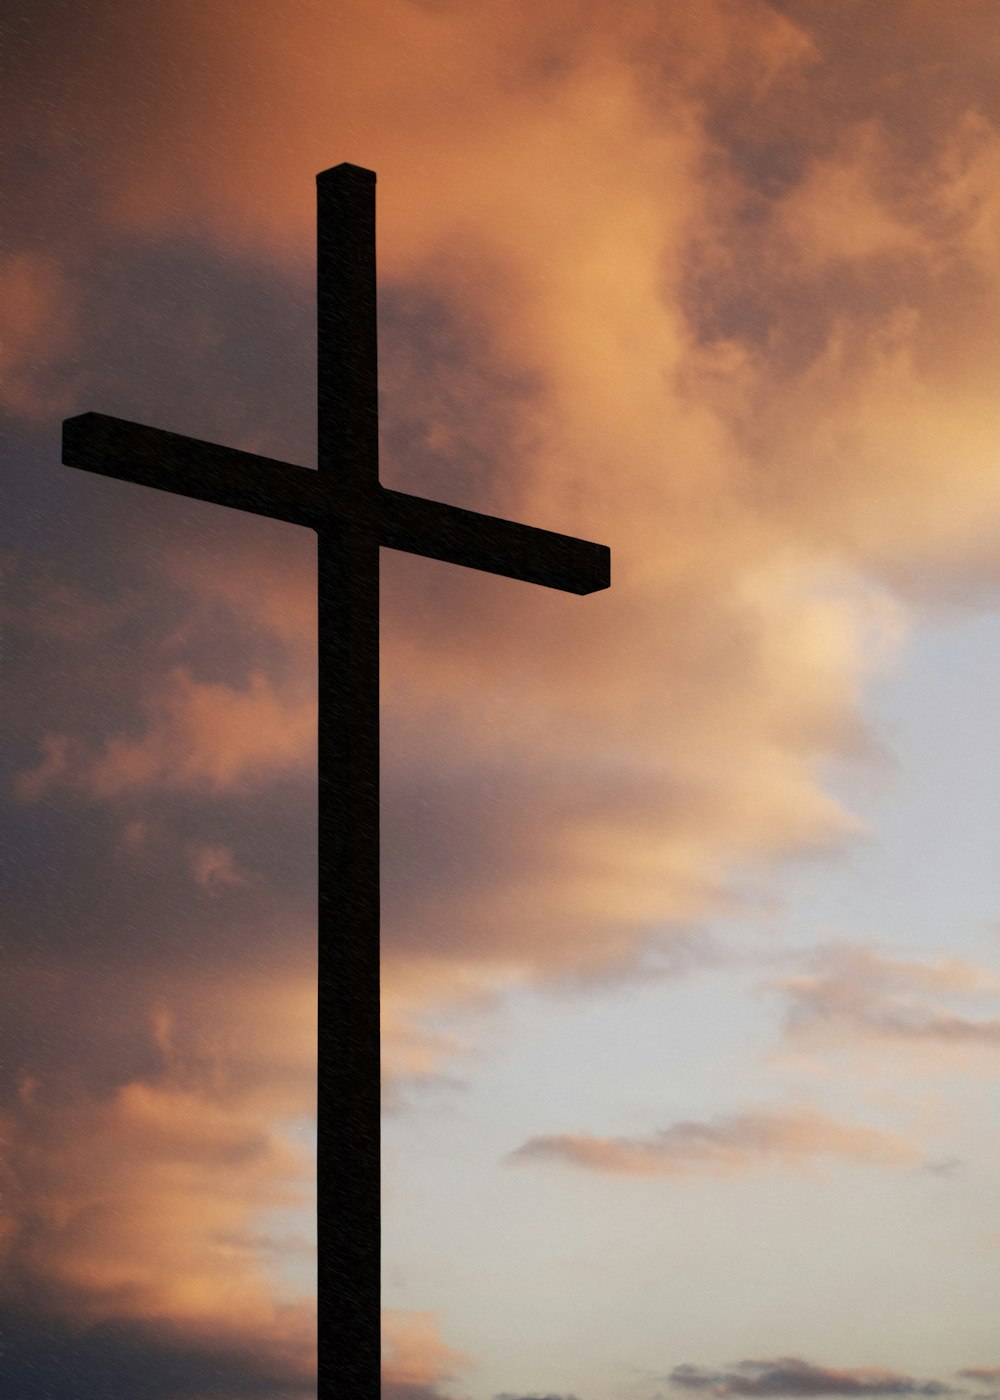 silueta de una gran cruz bajo un cielo anaranjado